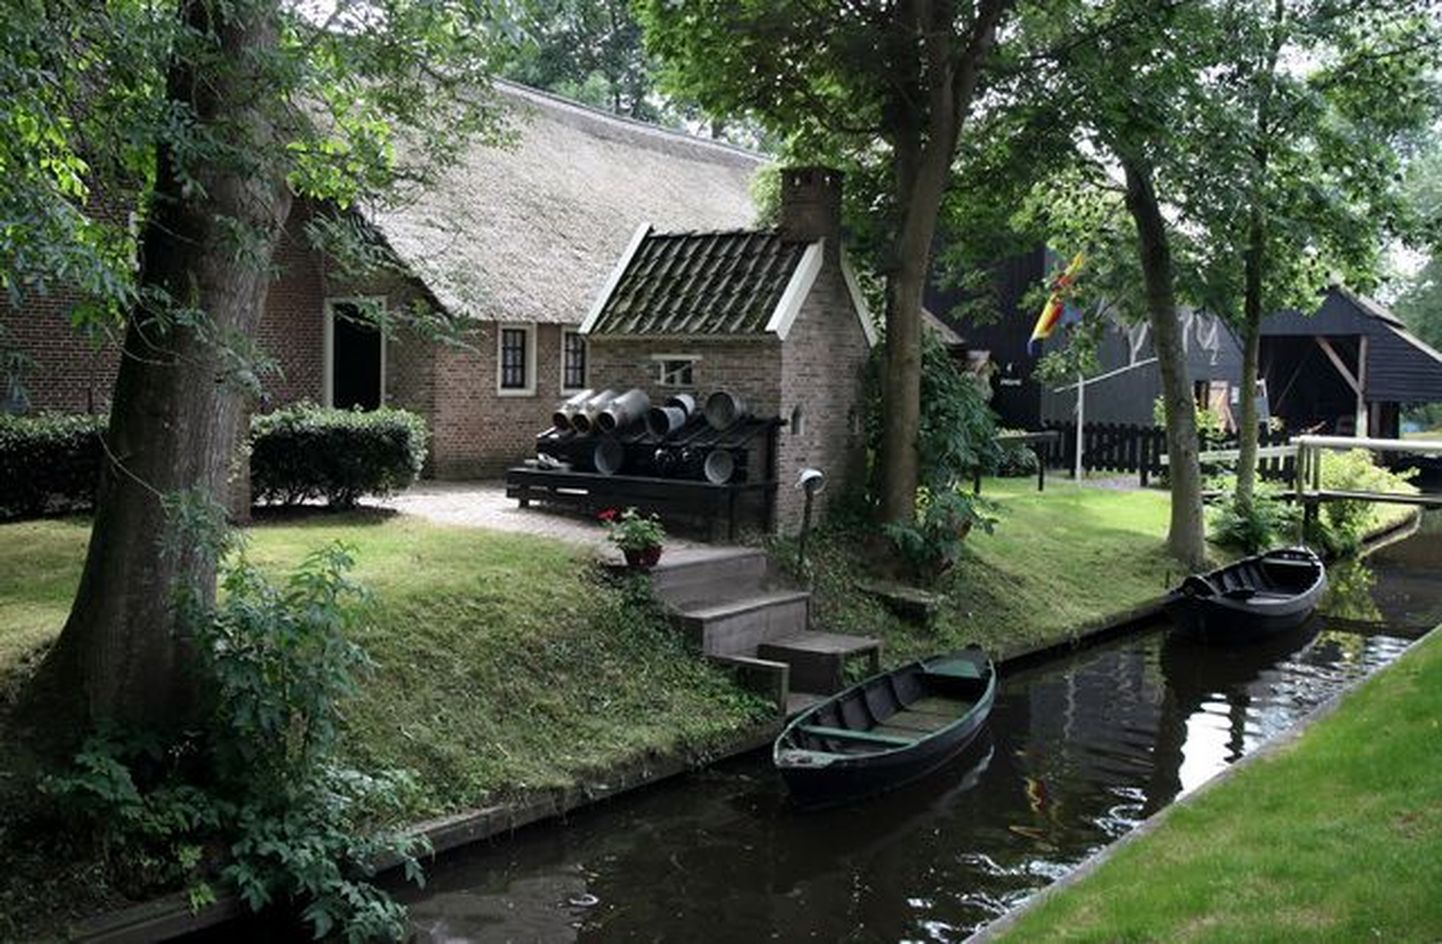 Vesitänavatega linnake Hollandis.